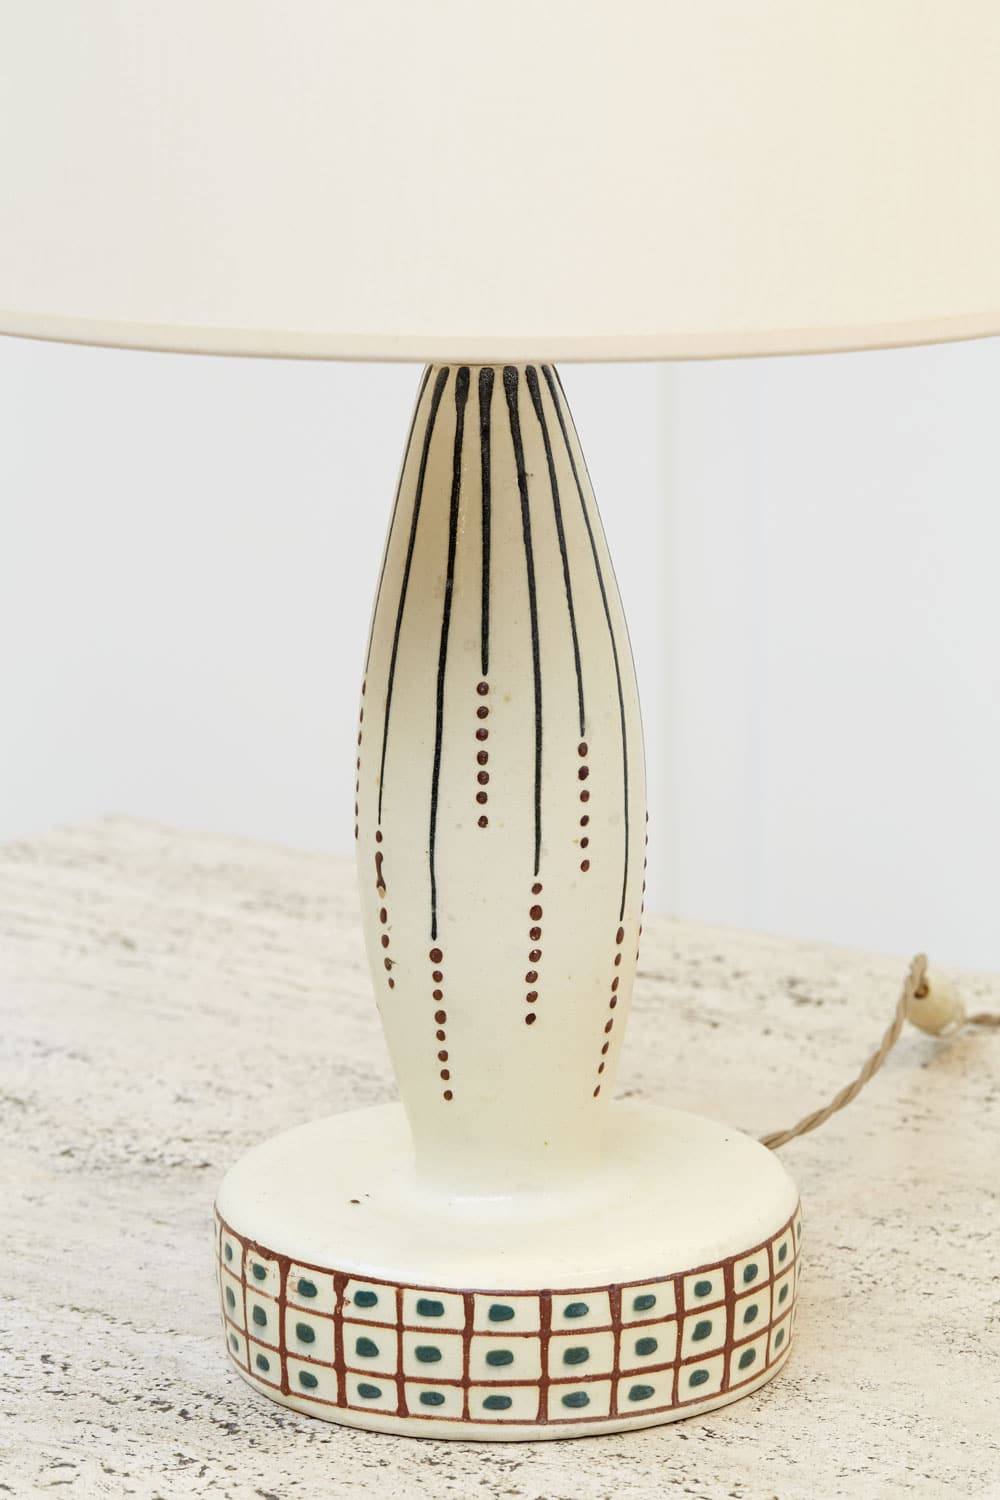 Francis Jourdain, Lampe en céramique, vue 03